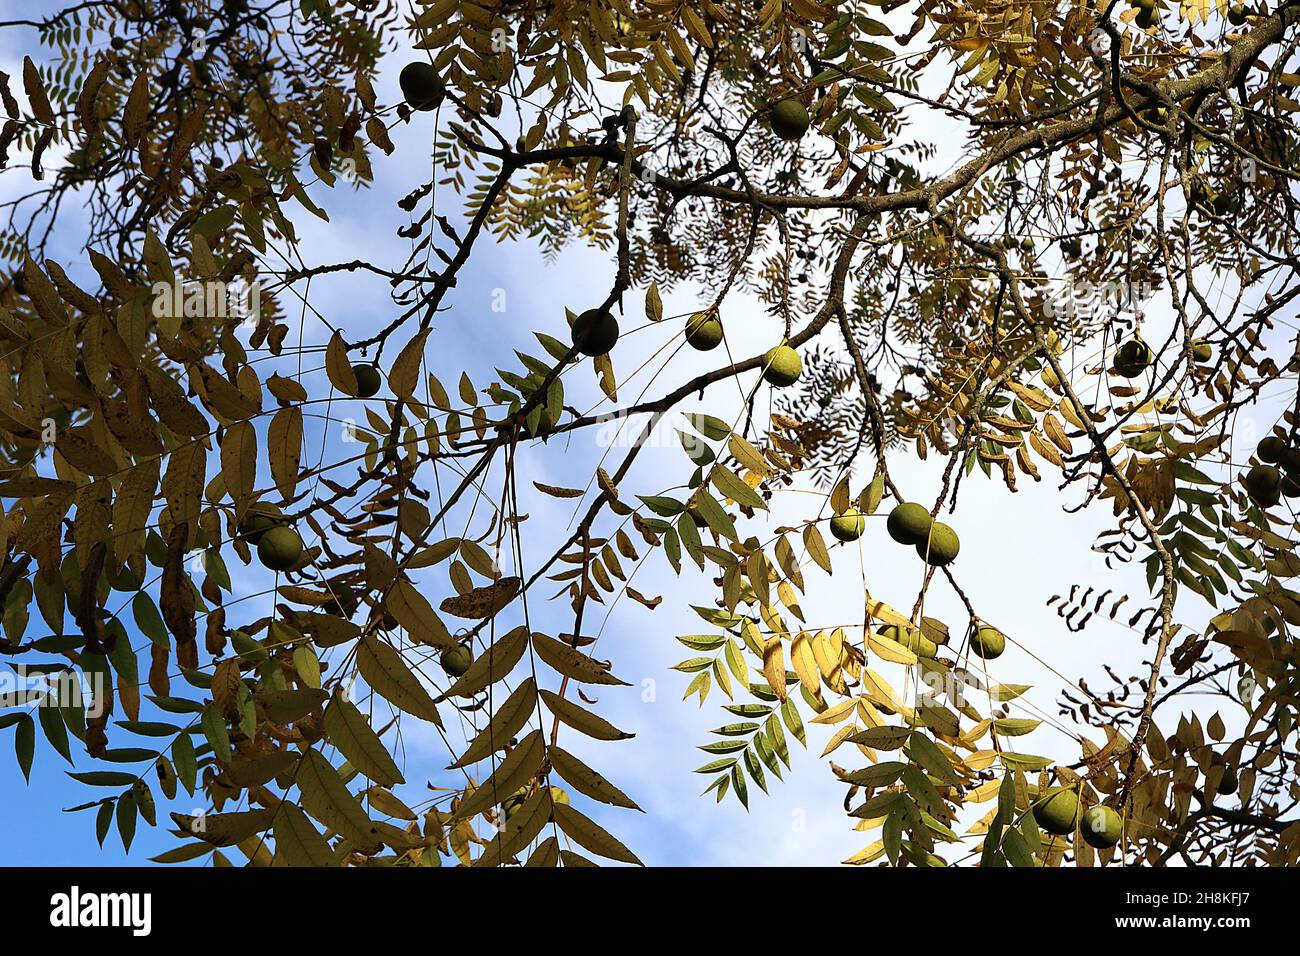 Juglans nigra noyer noir – grands fruits verts ronds et feuilles pinnées jaunes, novembre, Angleterre, Royaume-Uni Banque D'Images